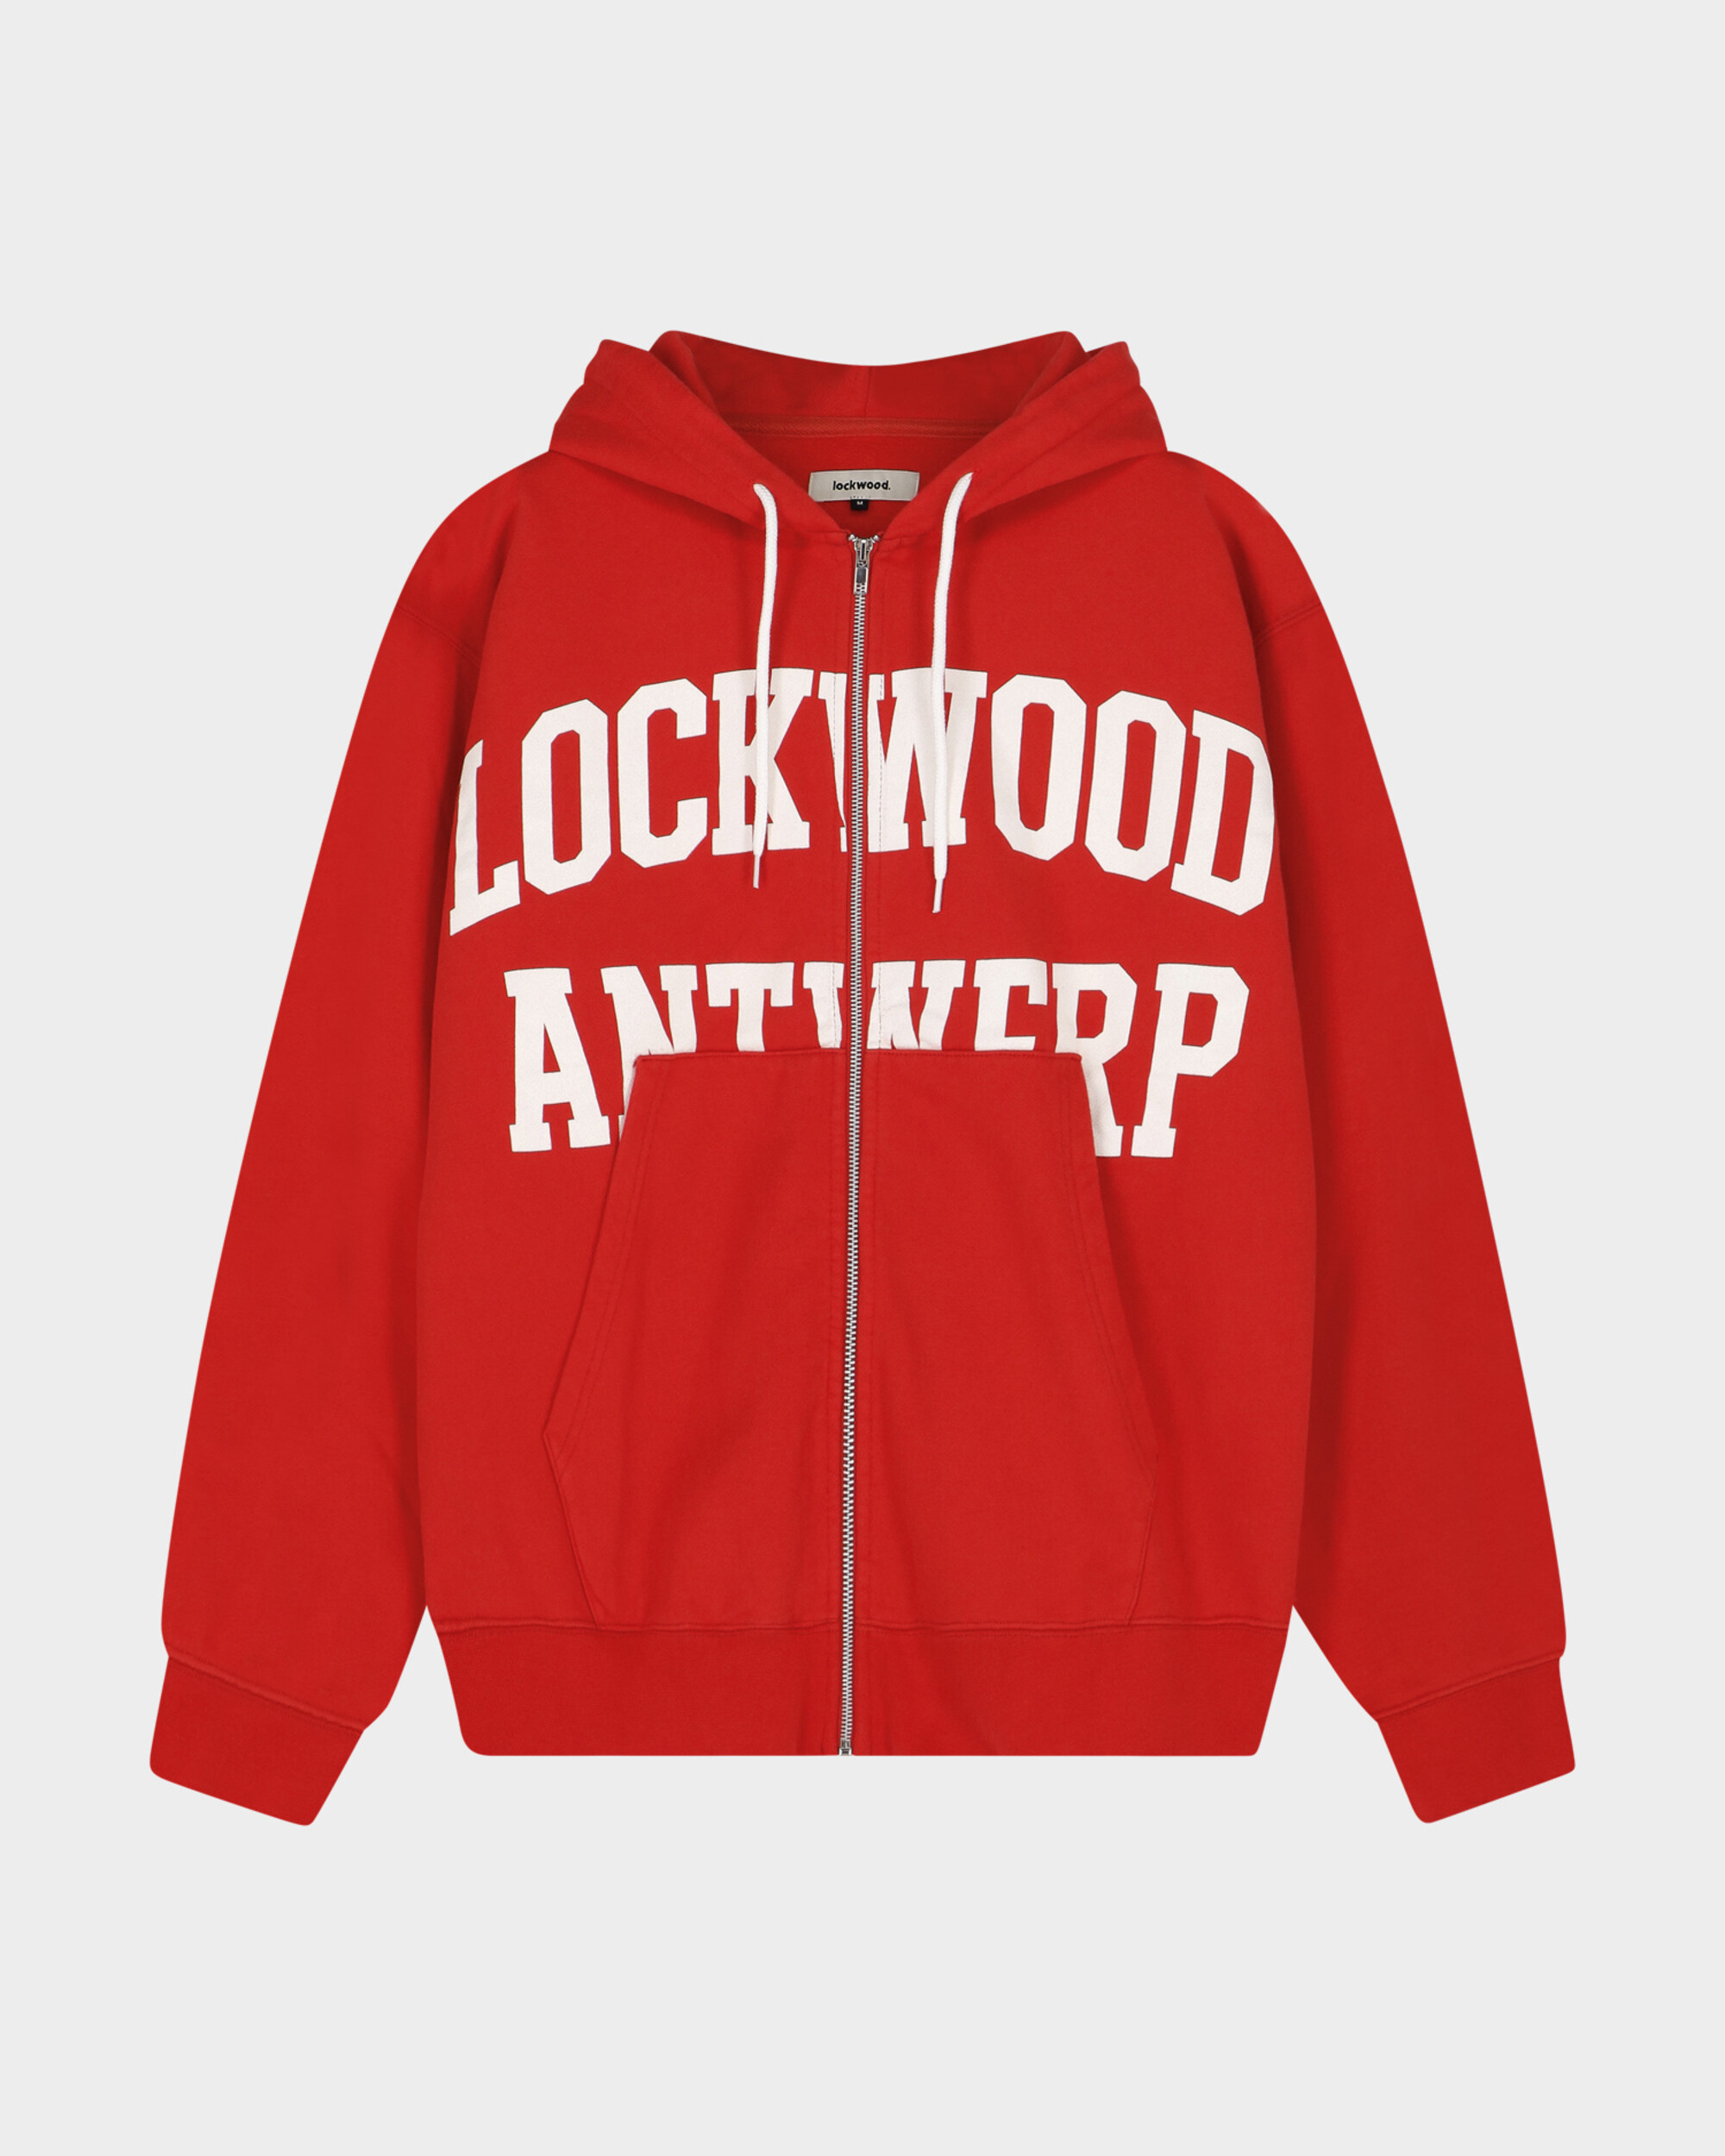 LOCKWOOD ANTWERP ZIP HOODIE - RED